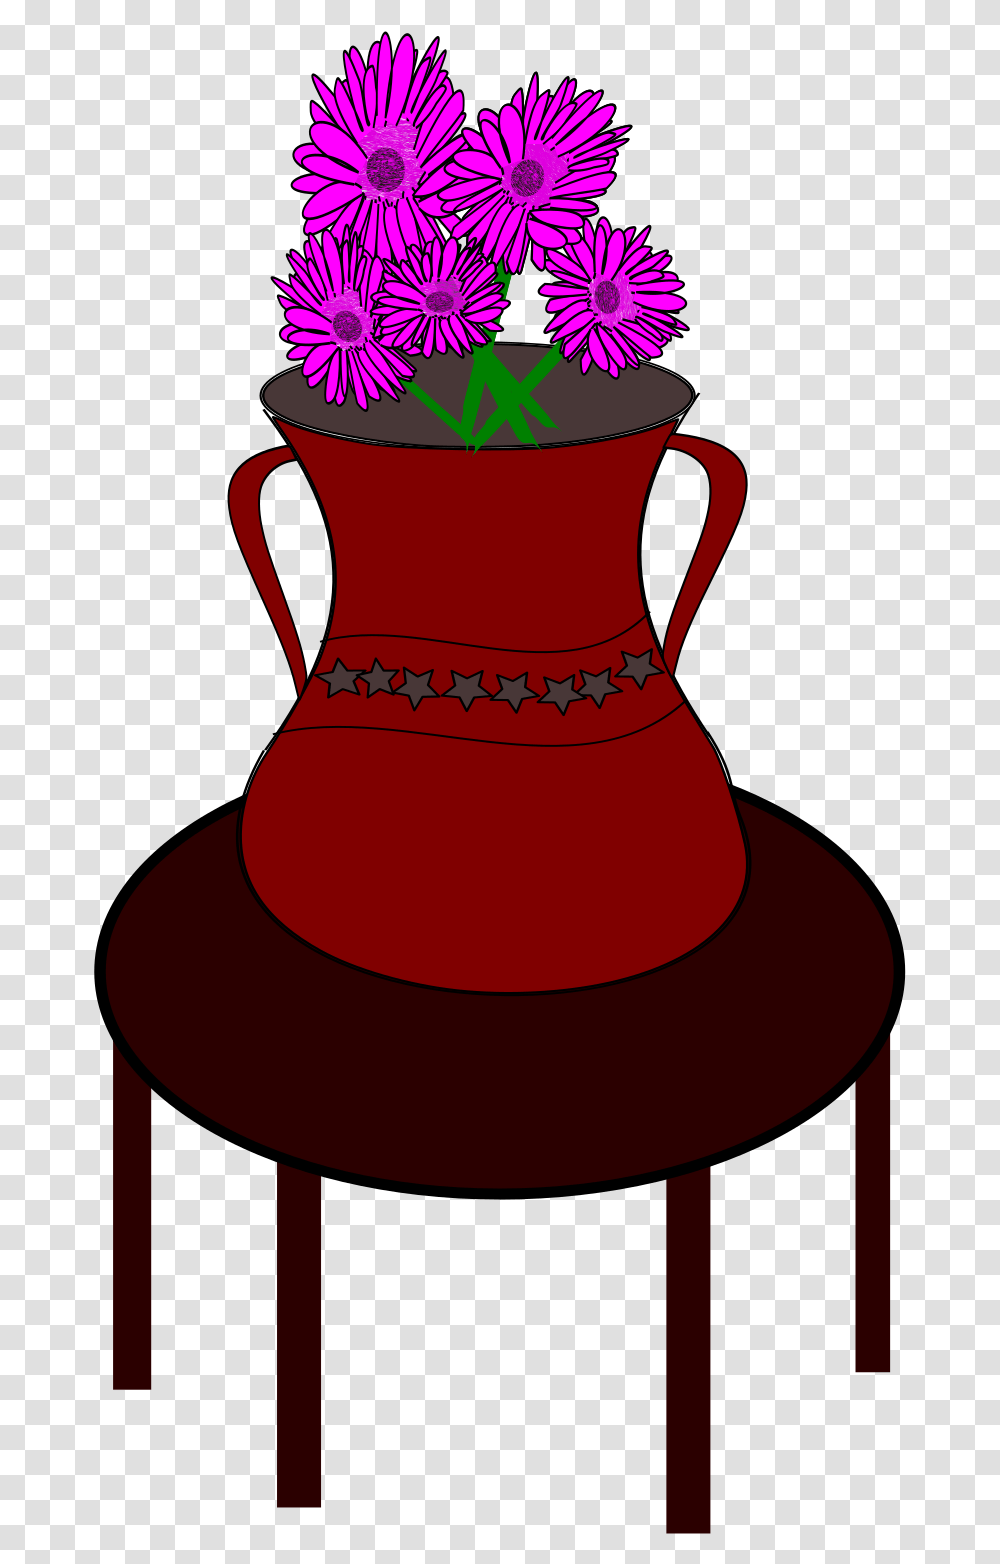 Flower Vase Clip Arts Flower Vase On The Table, Jar, Pottery, Urn, Lamp Transparent Png